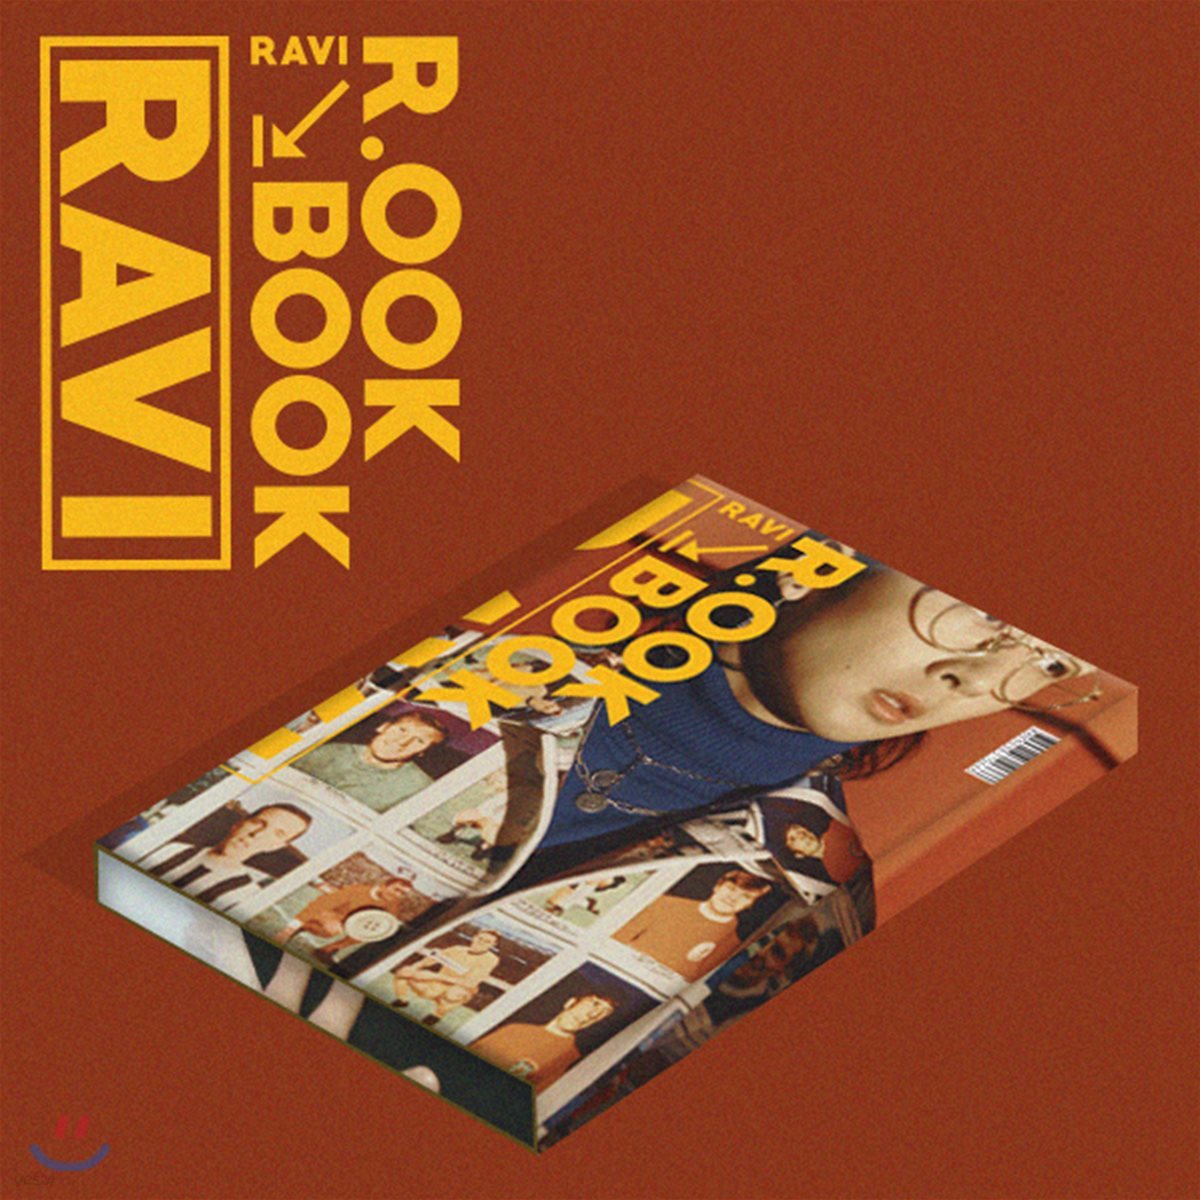 라비 (Ravi) - 미니앨범 2집 : R.OOK BOOK [스마트뮤직앨범]